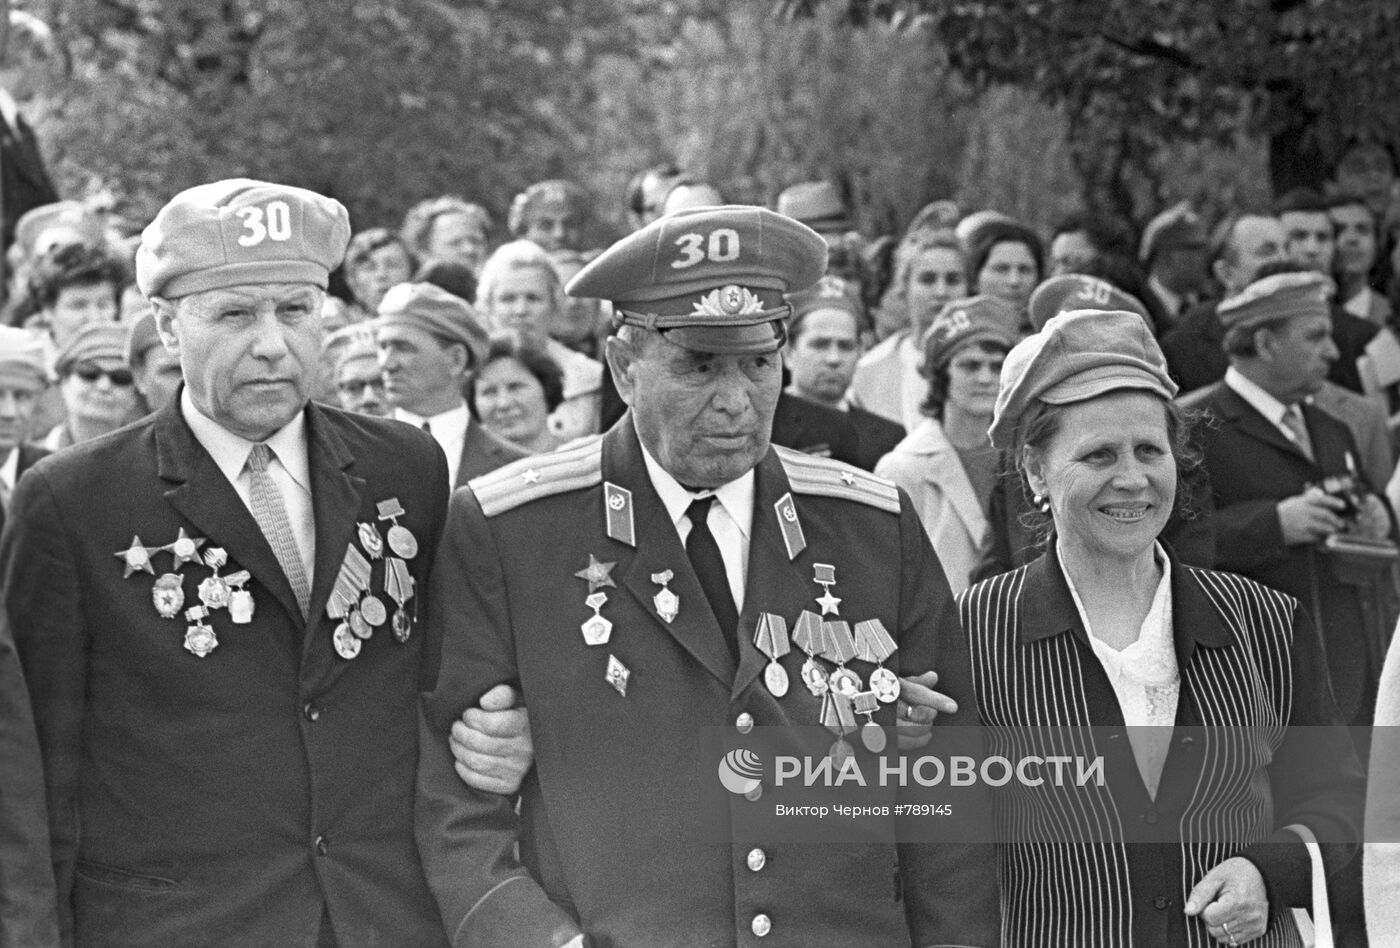 Ветераны П.М. Гаврилов и Н.А. Балак